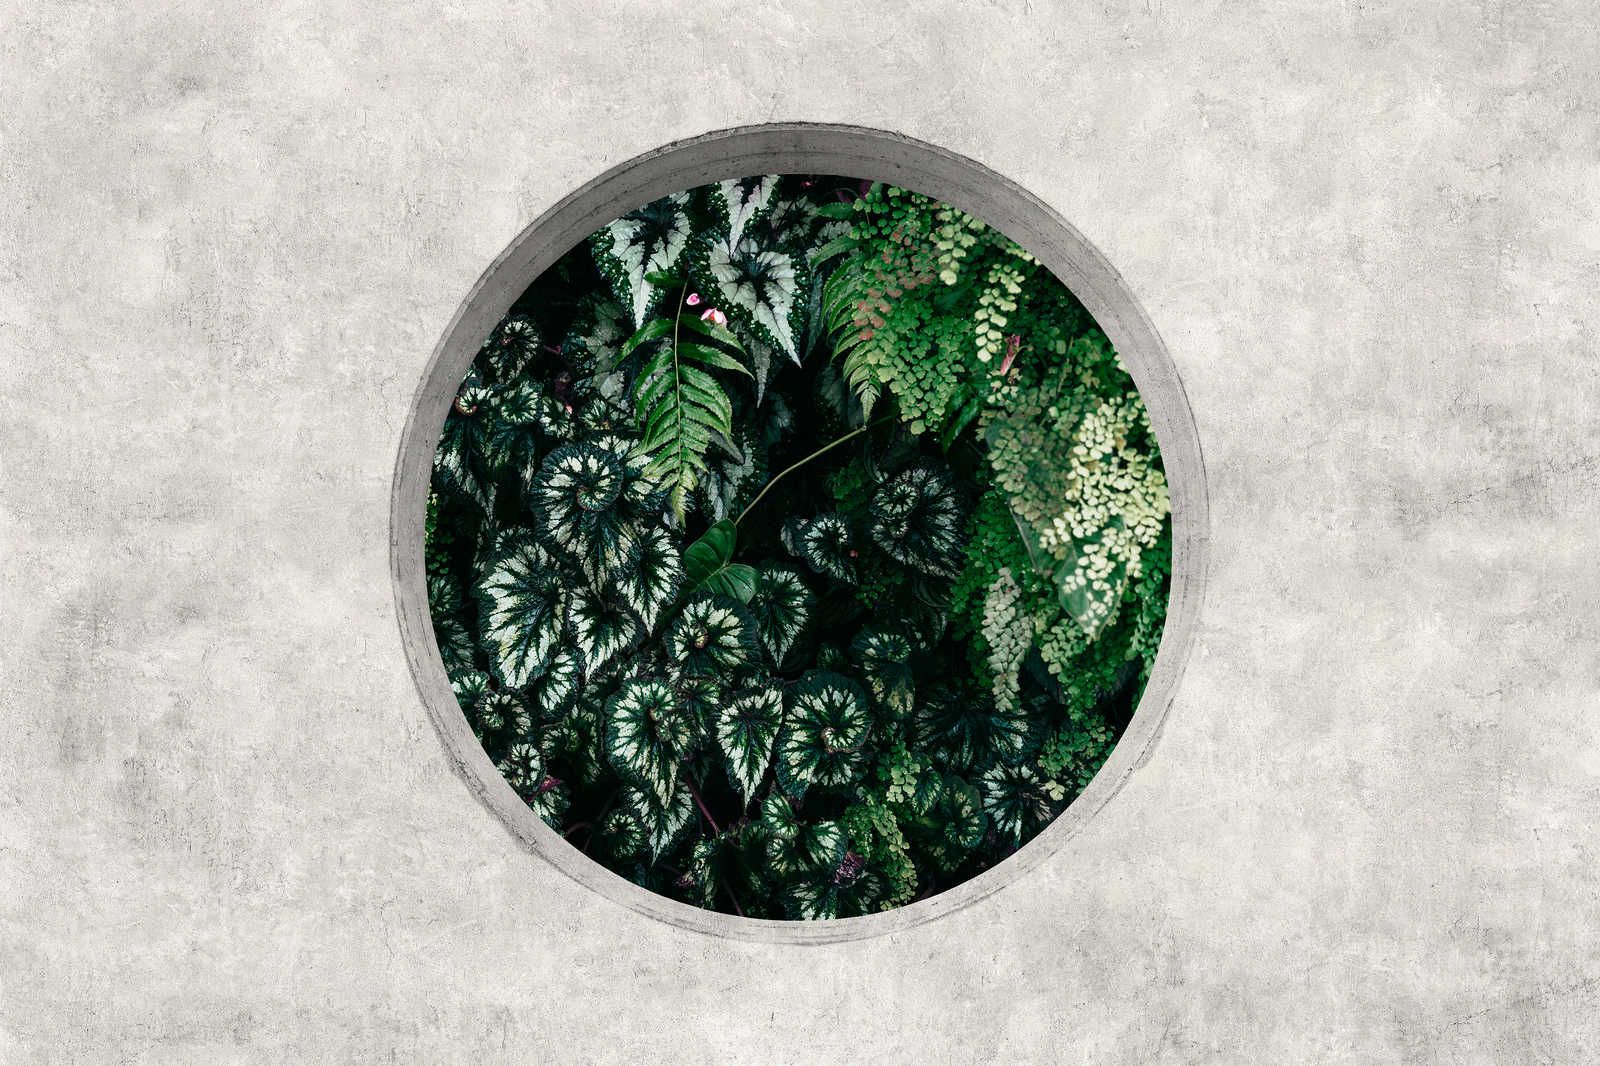             Deep Green 1 - Leinwandbild Fenster Rund mit Dschungel Pflanzen – 1,20 m x 0,80 m
        